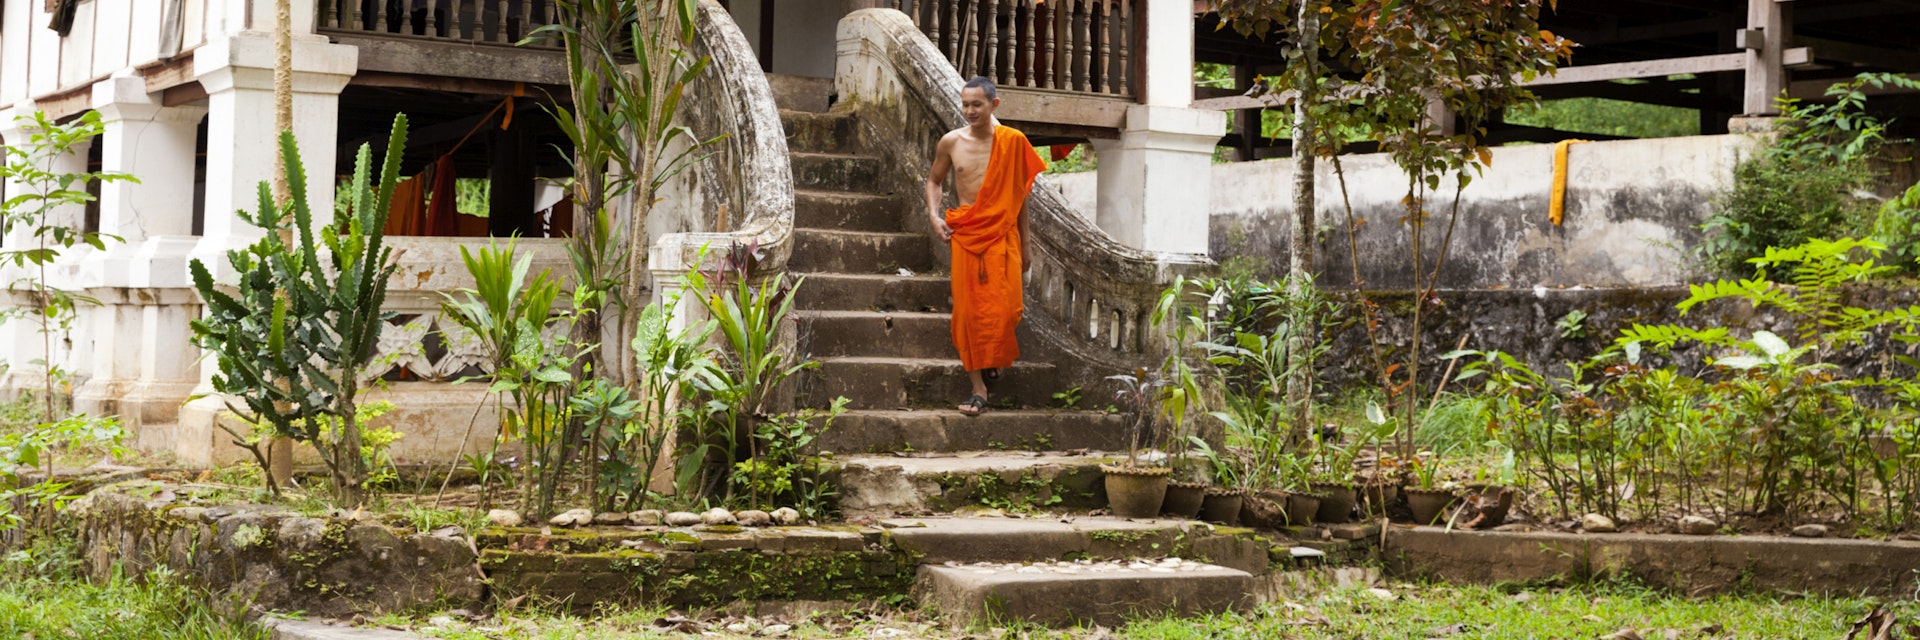 Laos, Luang Prabang. Monk at Wat Long Khun.